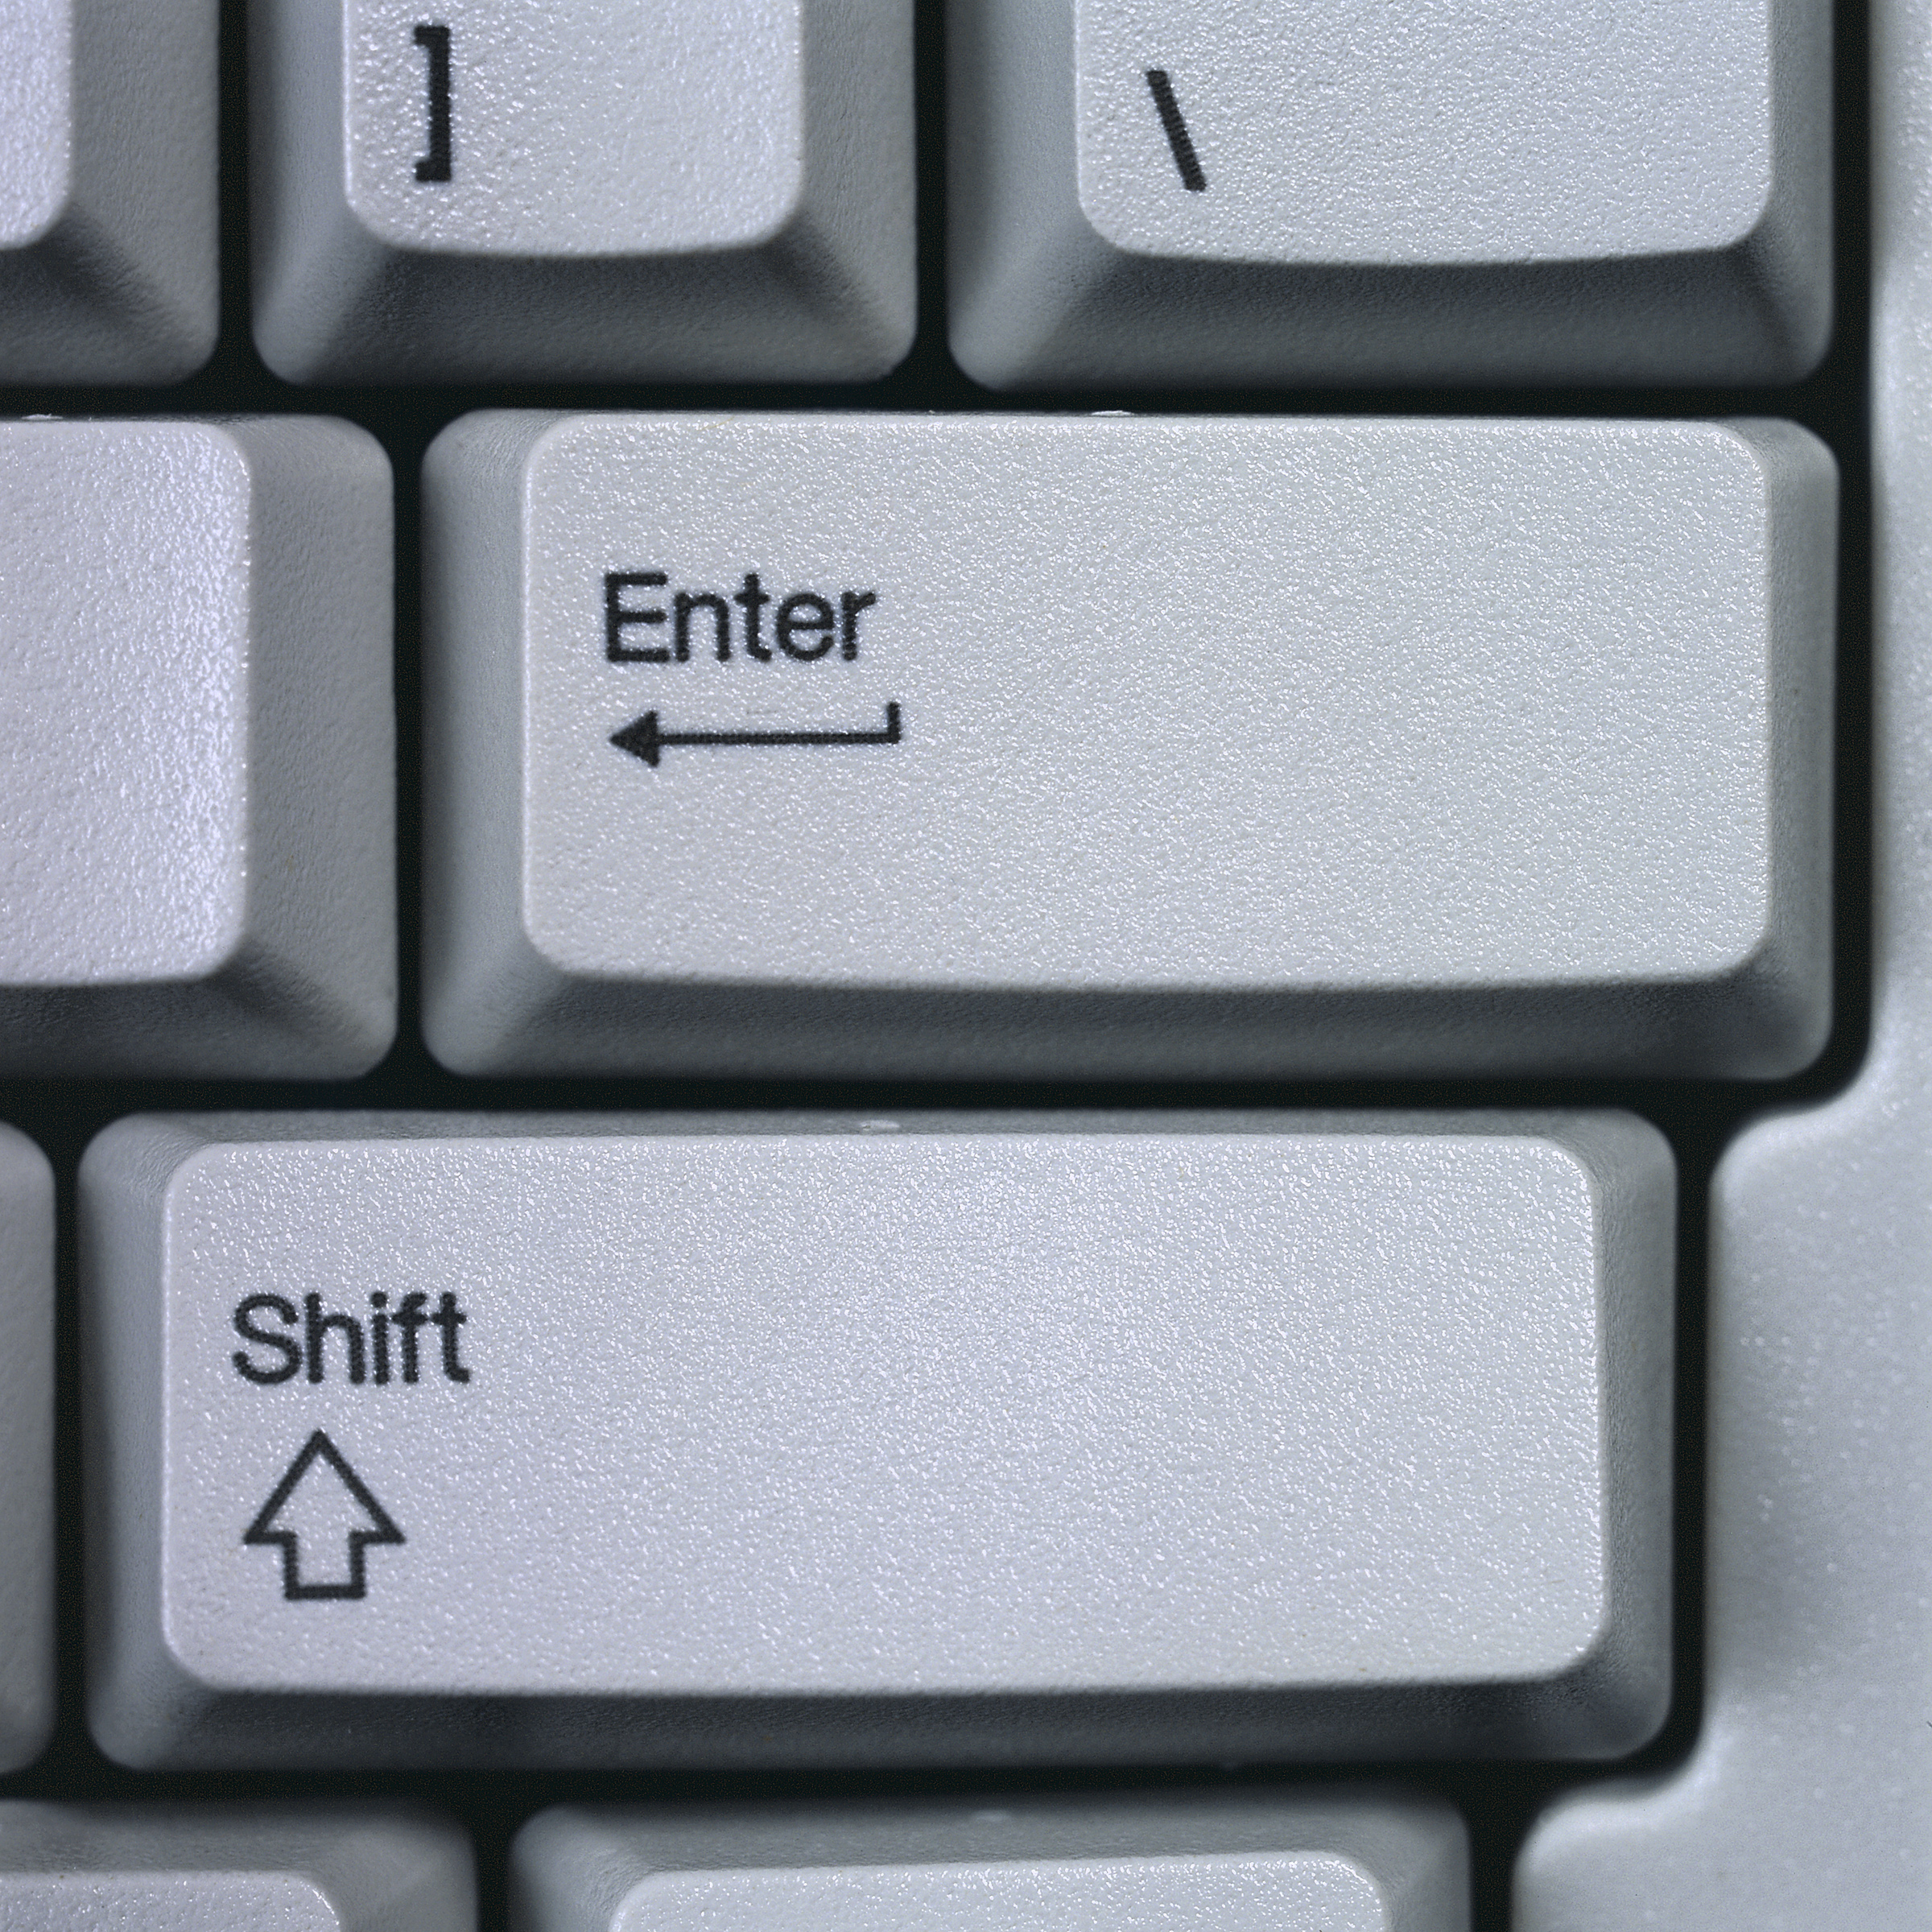 Enter shift клавиши. Шифт плюс Энтер. Кнопки шифт и Энтер. Шифт ентер на клавиатуре. Кнопка Энтер на клавиатуре.